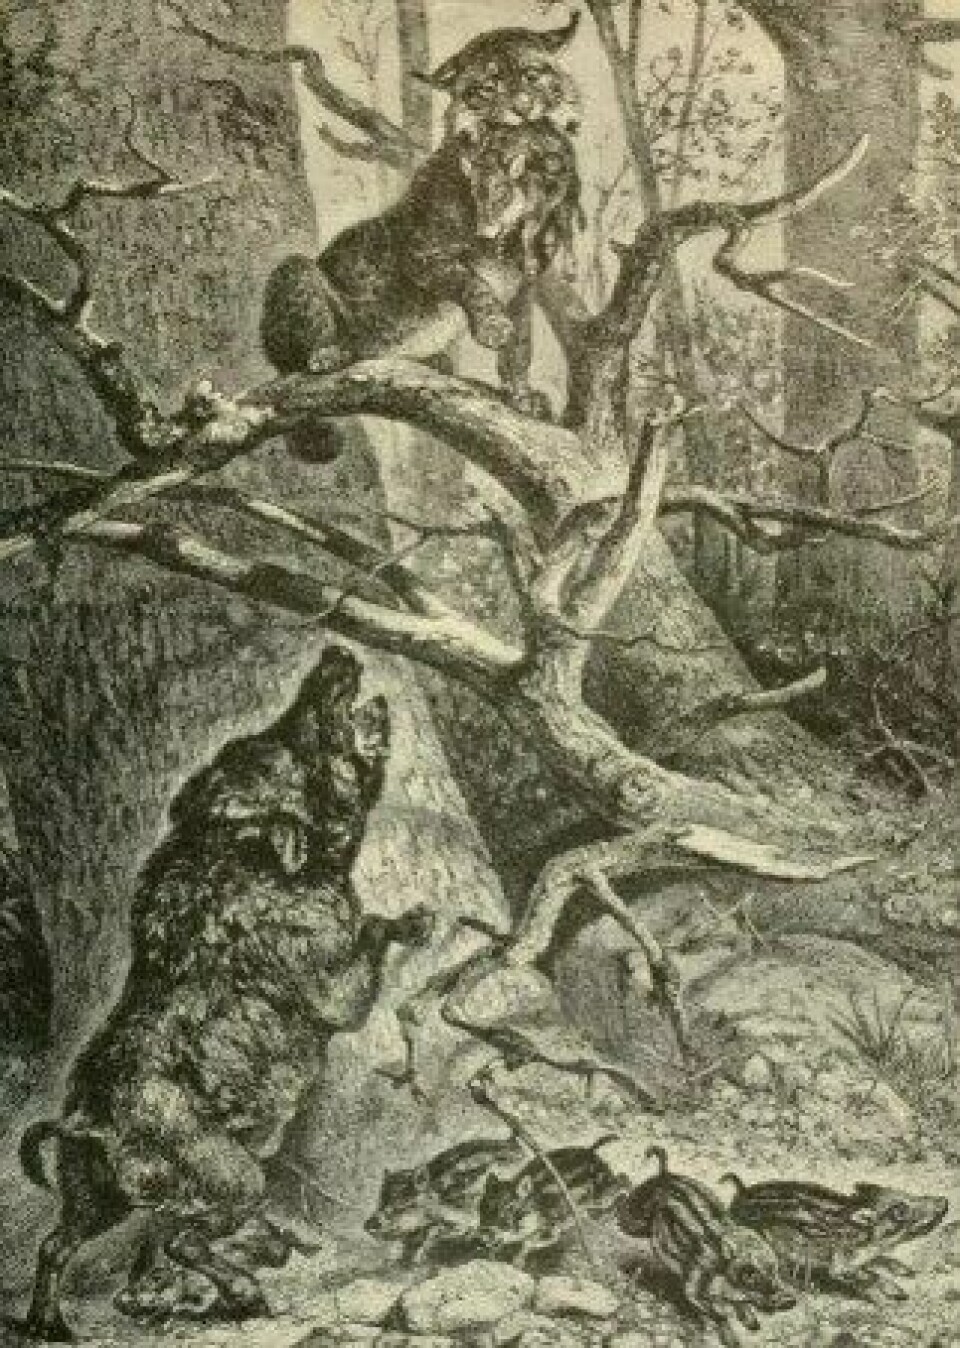 Villsvinet figurerte i flere informasjonsbøker om dyr på 1800-tallet. (Kilde: Wikimedia commons CC0)